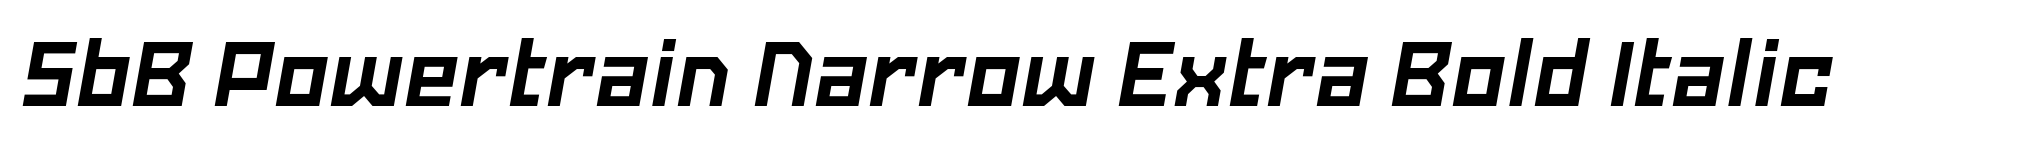 SbB Powertrain Narrow Extra Bold Italic image